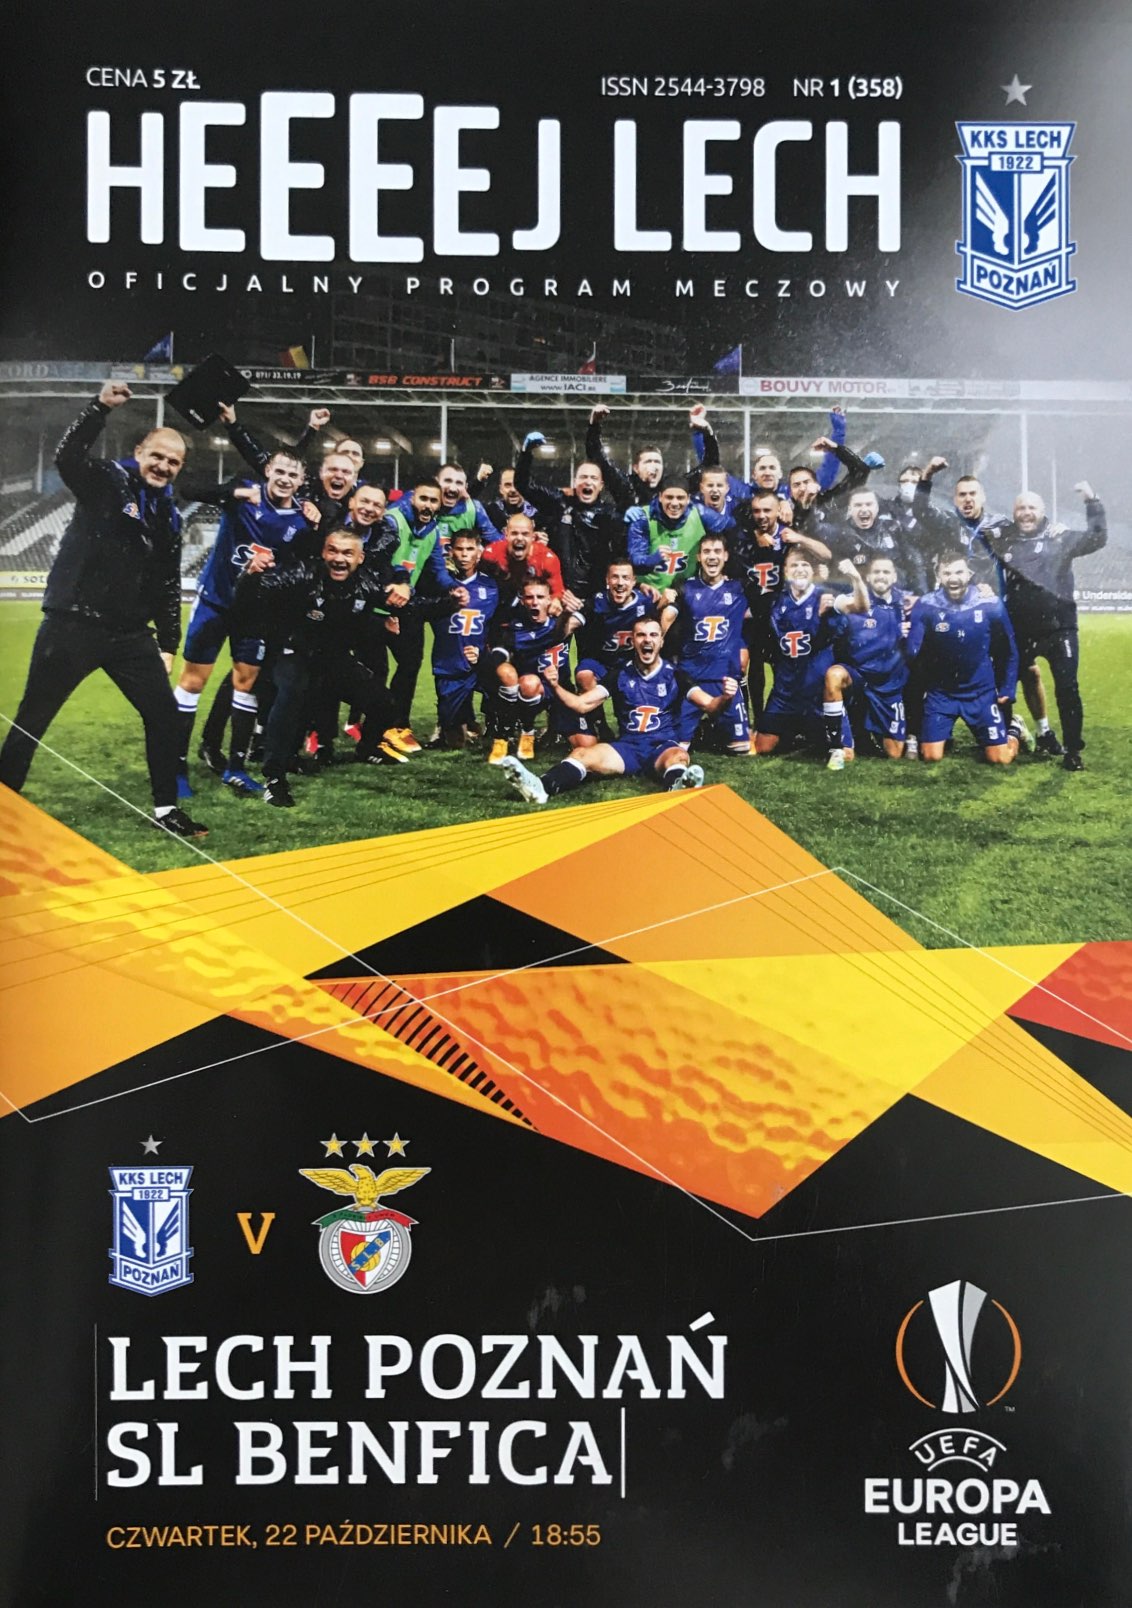 Program meczowy Lech Poznań - Benfica Lizbona 2:4 (22.10.2020)